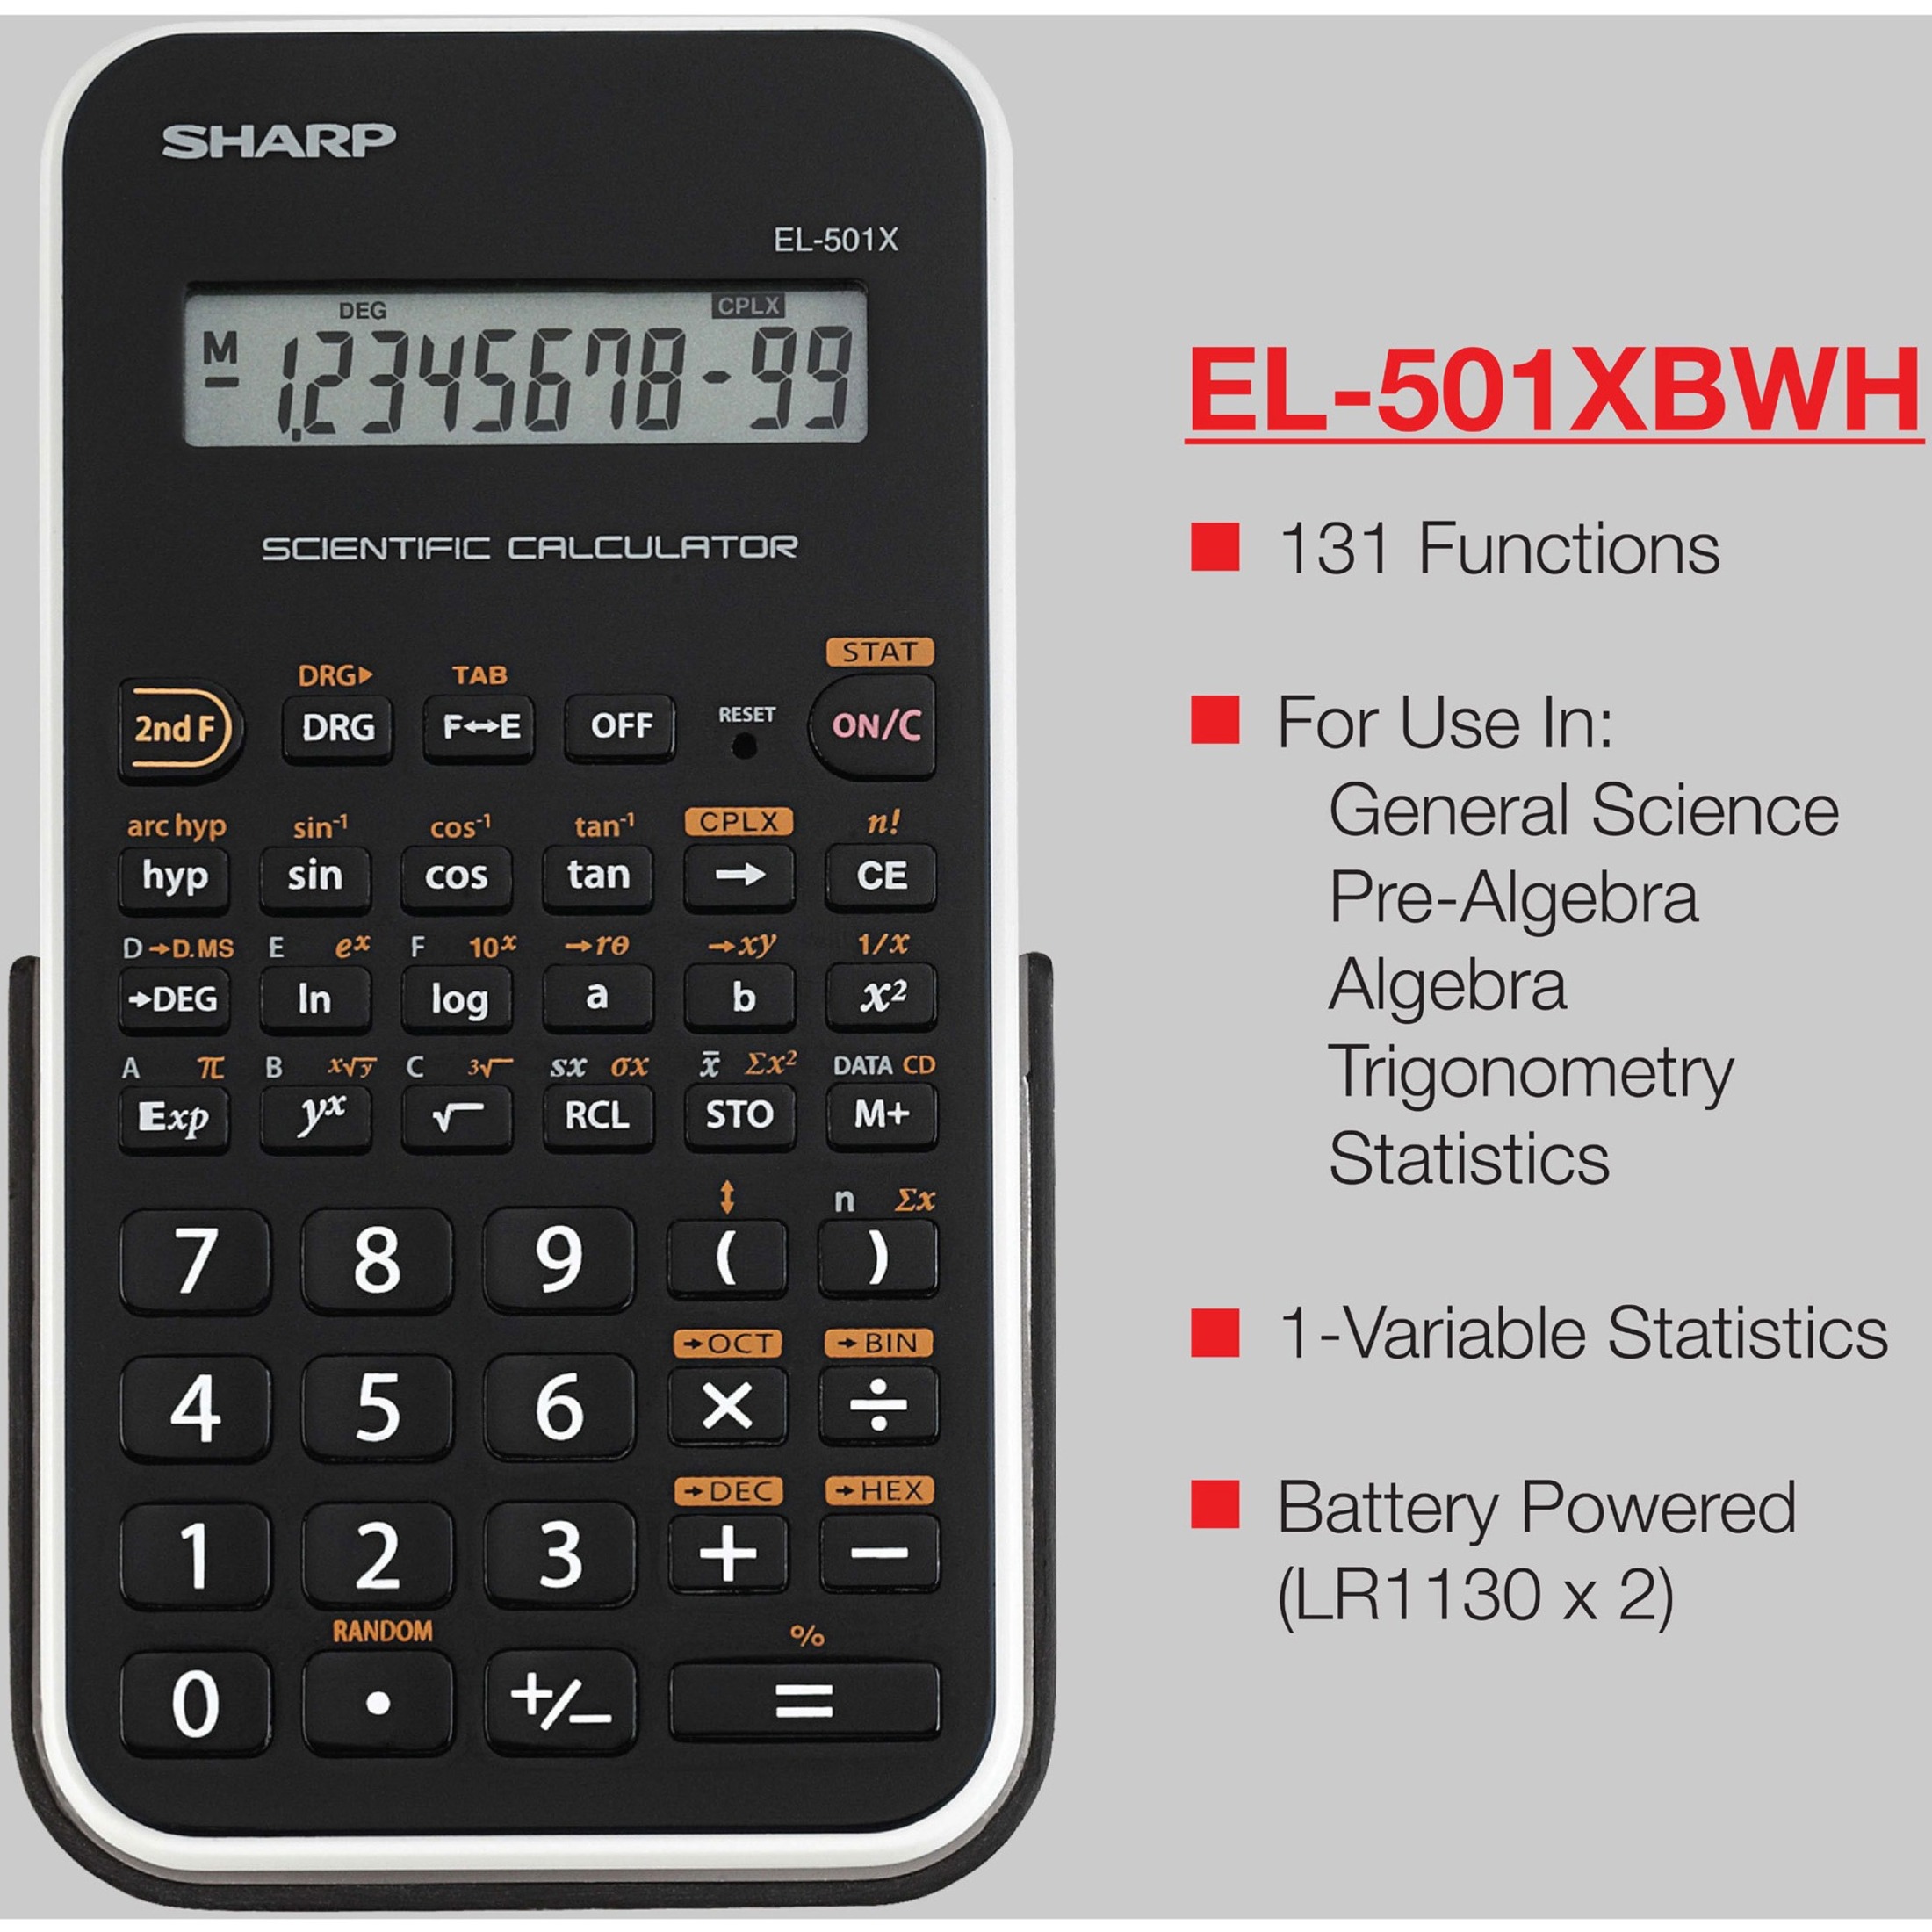 Sharp EL-501XBWH Scientific Calculator, Black - image 3 of 4